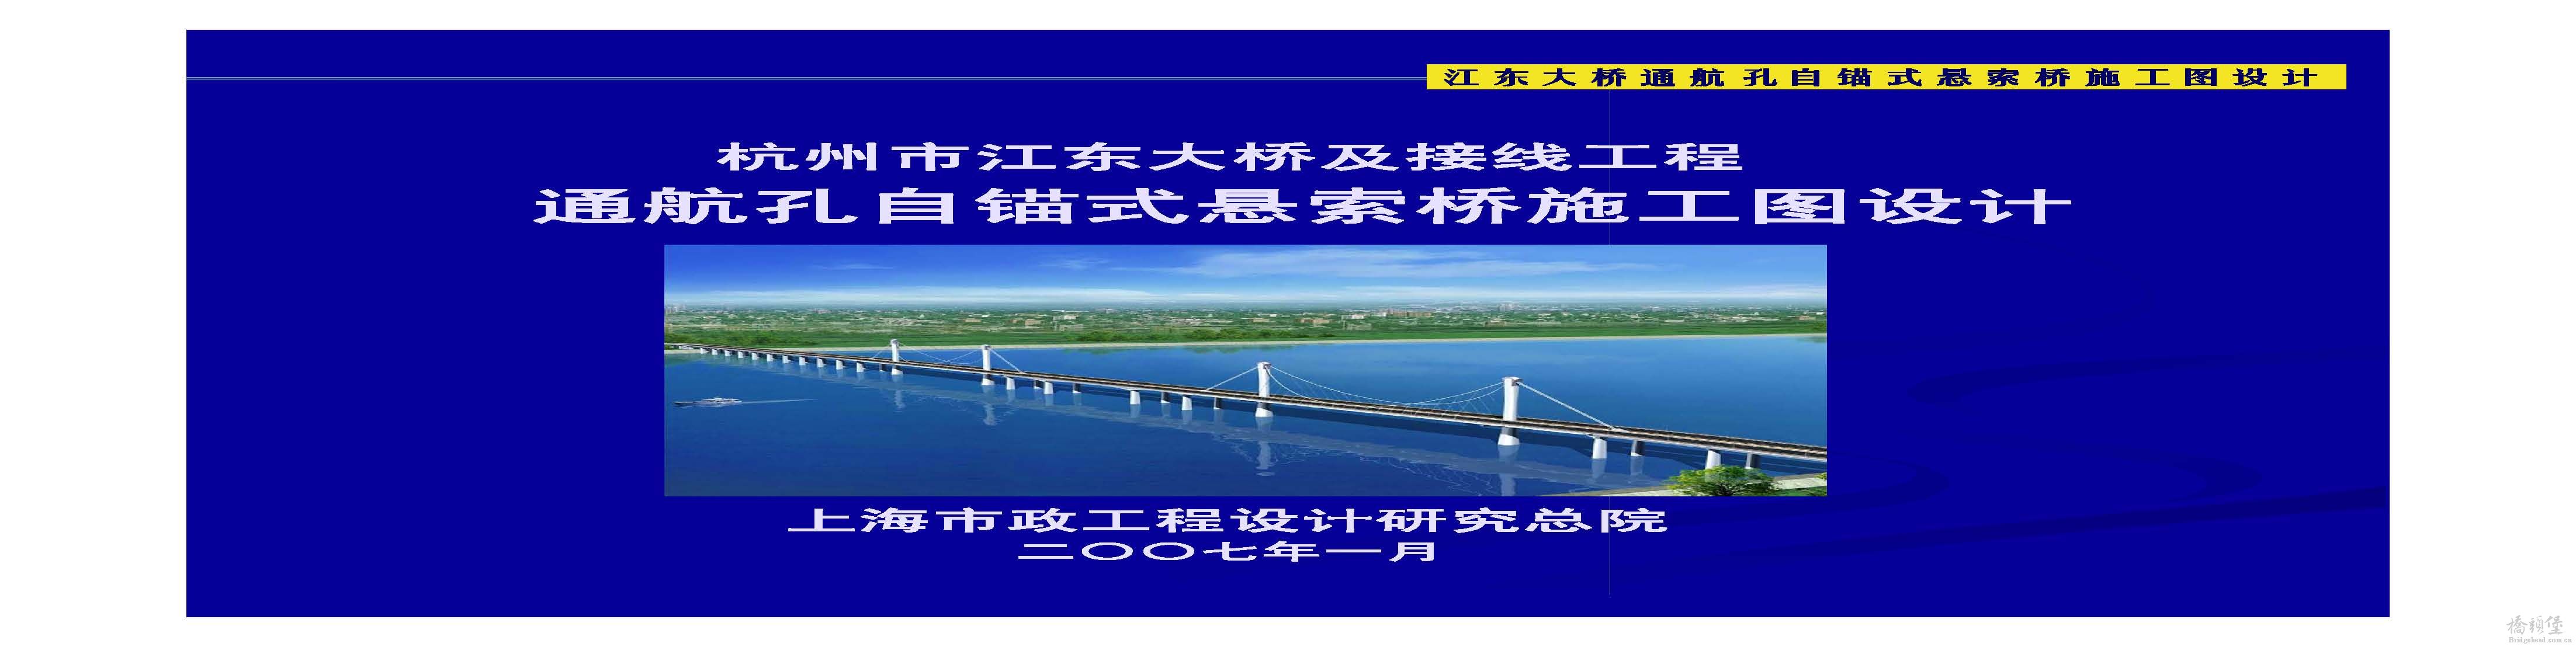 杭州江东大桥悬索桥施工图设计汇报_页面_01.jpg